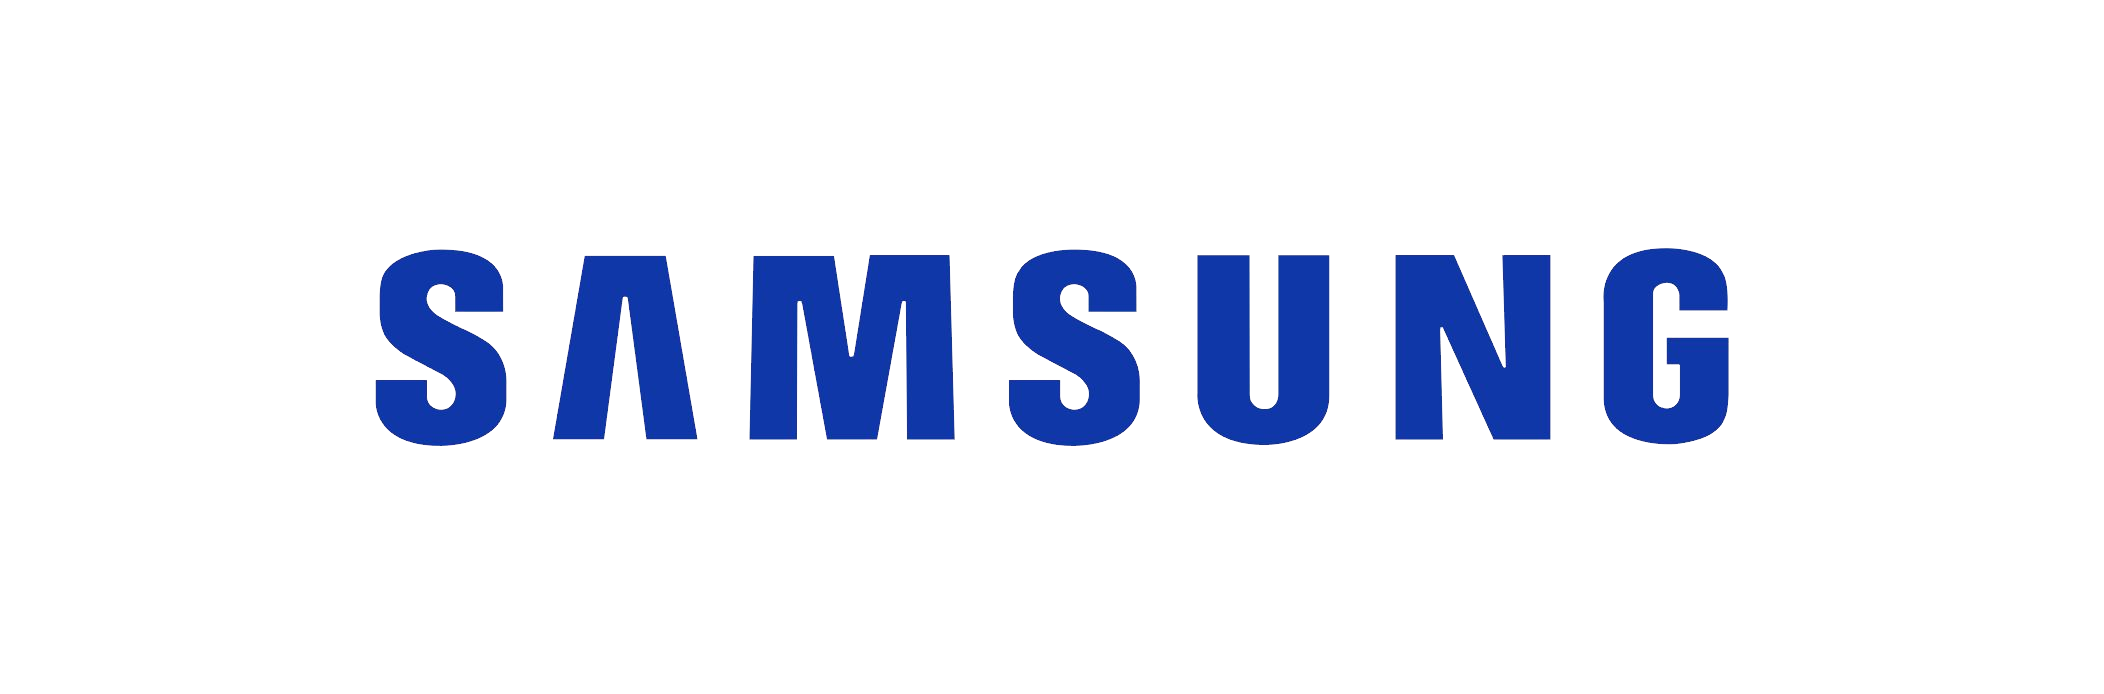 Logotipo da Samsung